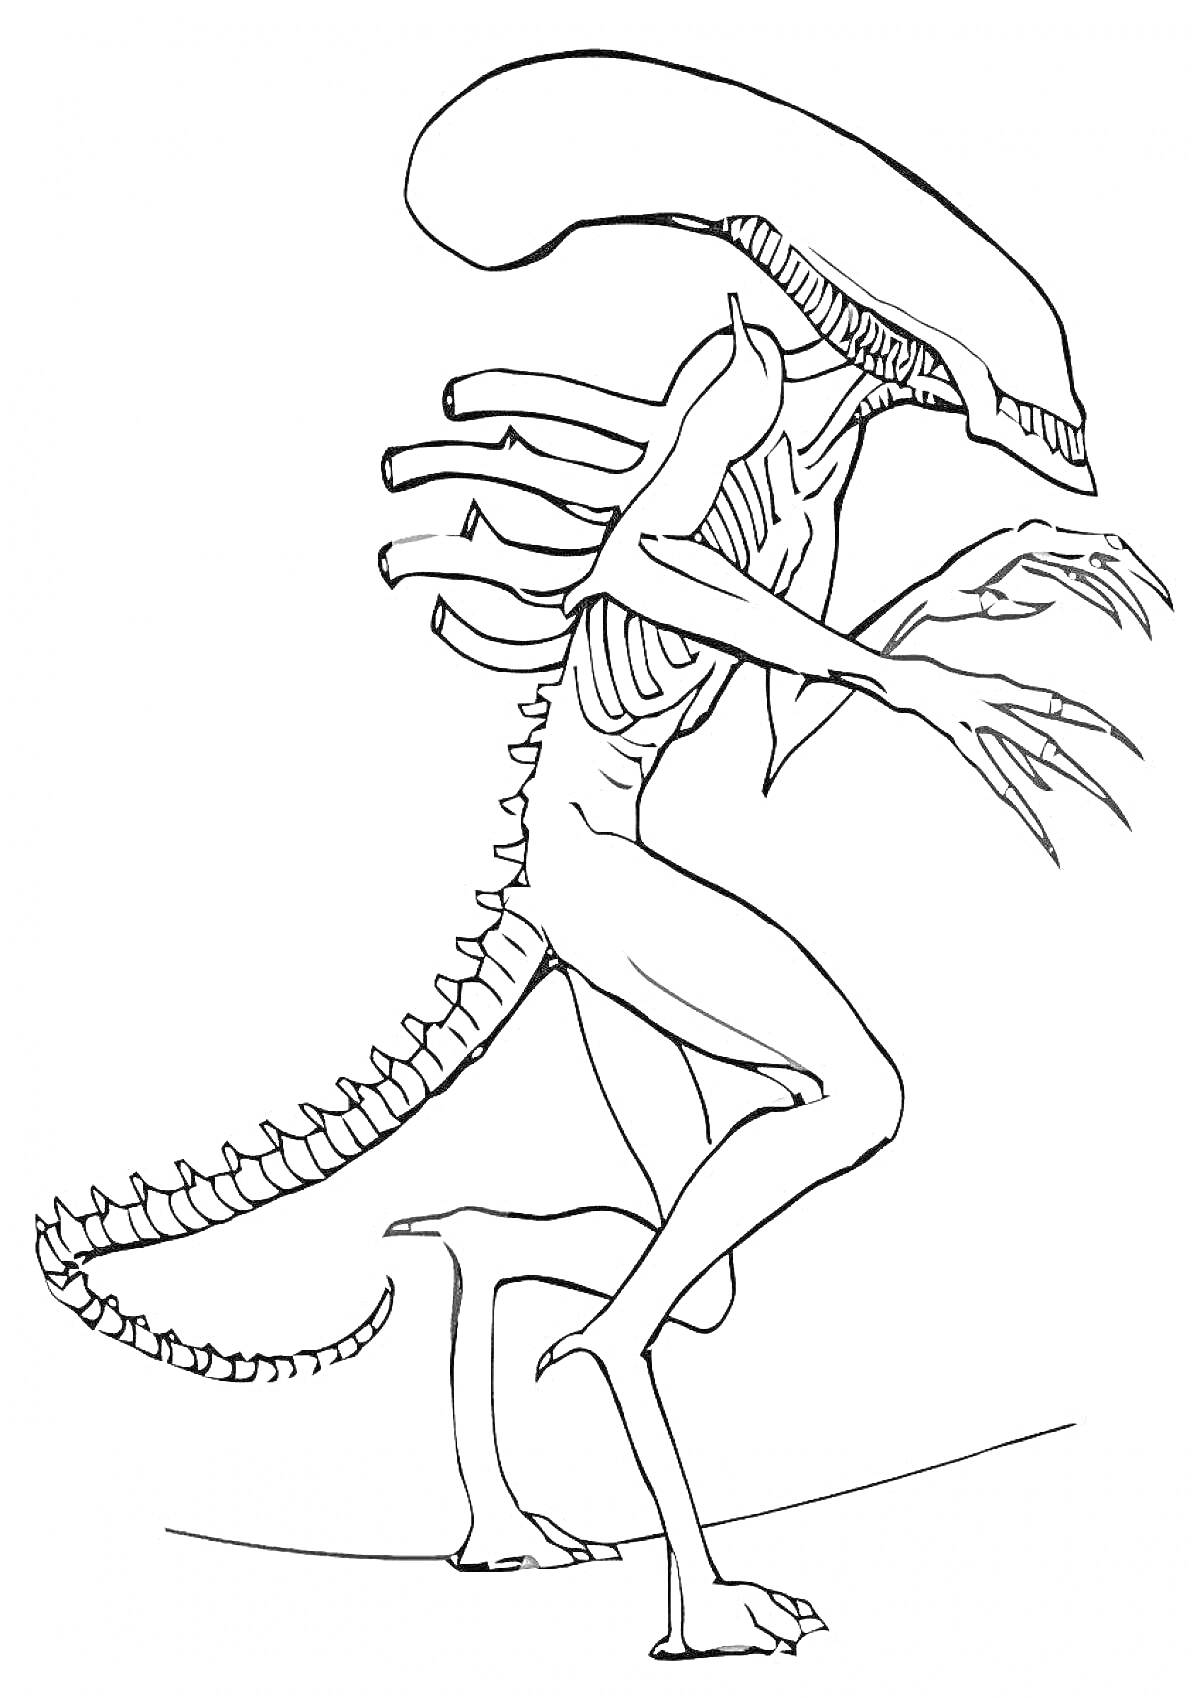 Инопланетное существо с длинным хвостом и вытянутой головой, демонстрирующее агрессивную позу